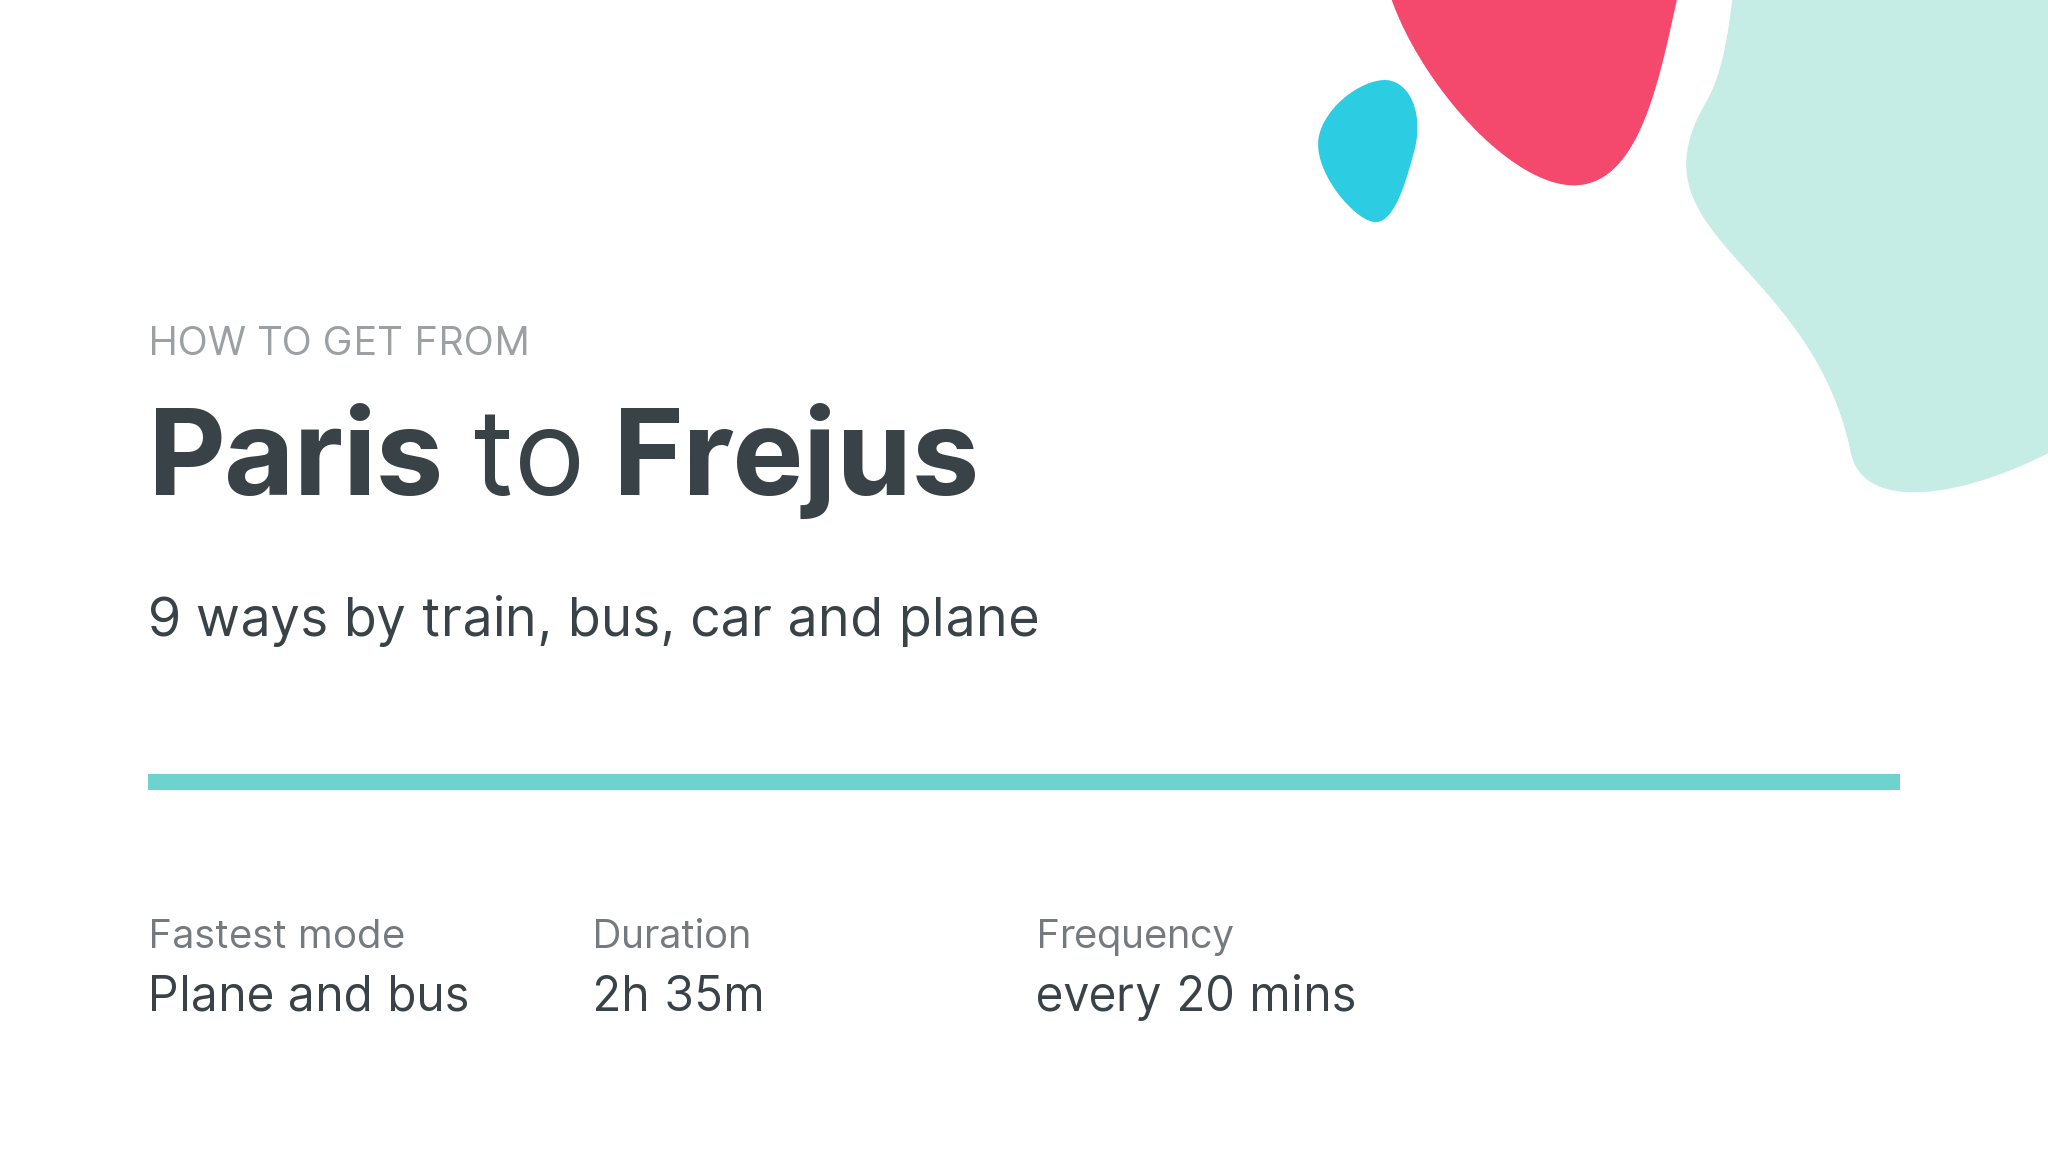 How do I get from Paris to Frejus